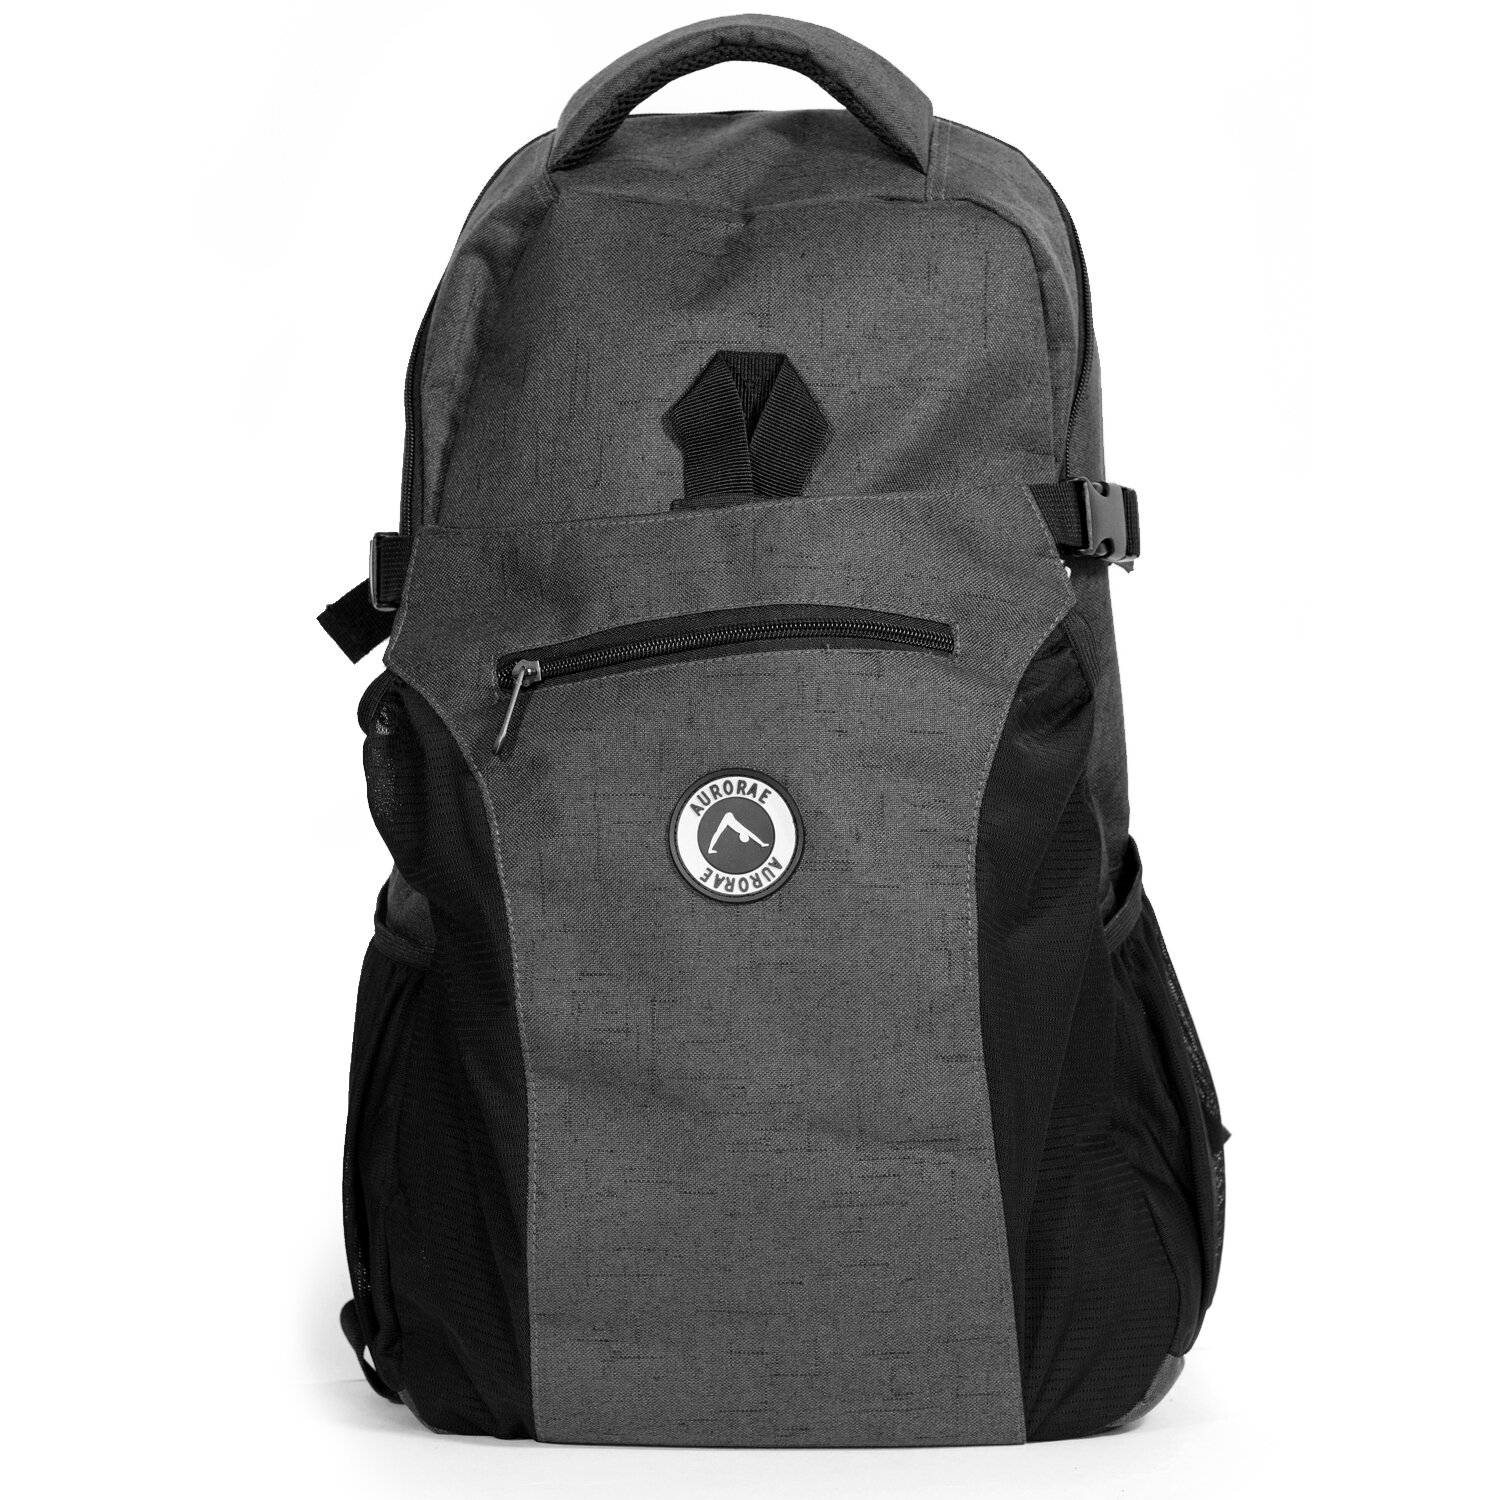 Aurorae-Backpack-Charcoal-1500-01.jpg